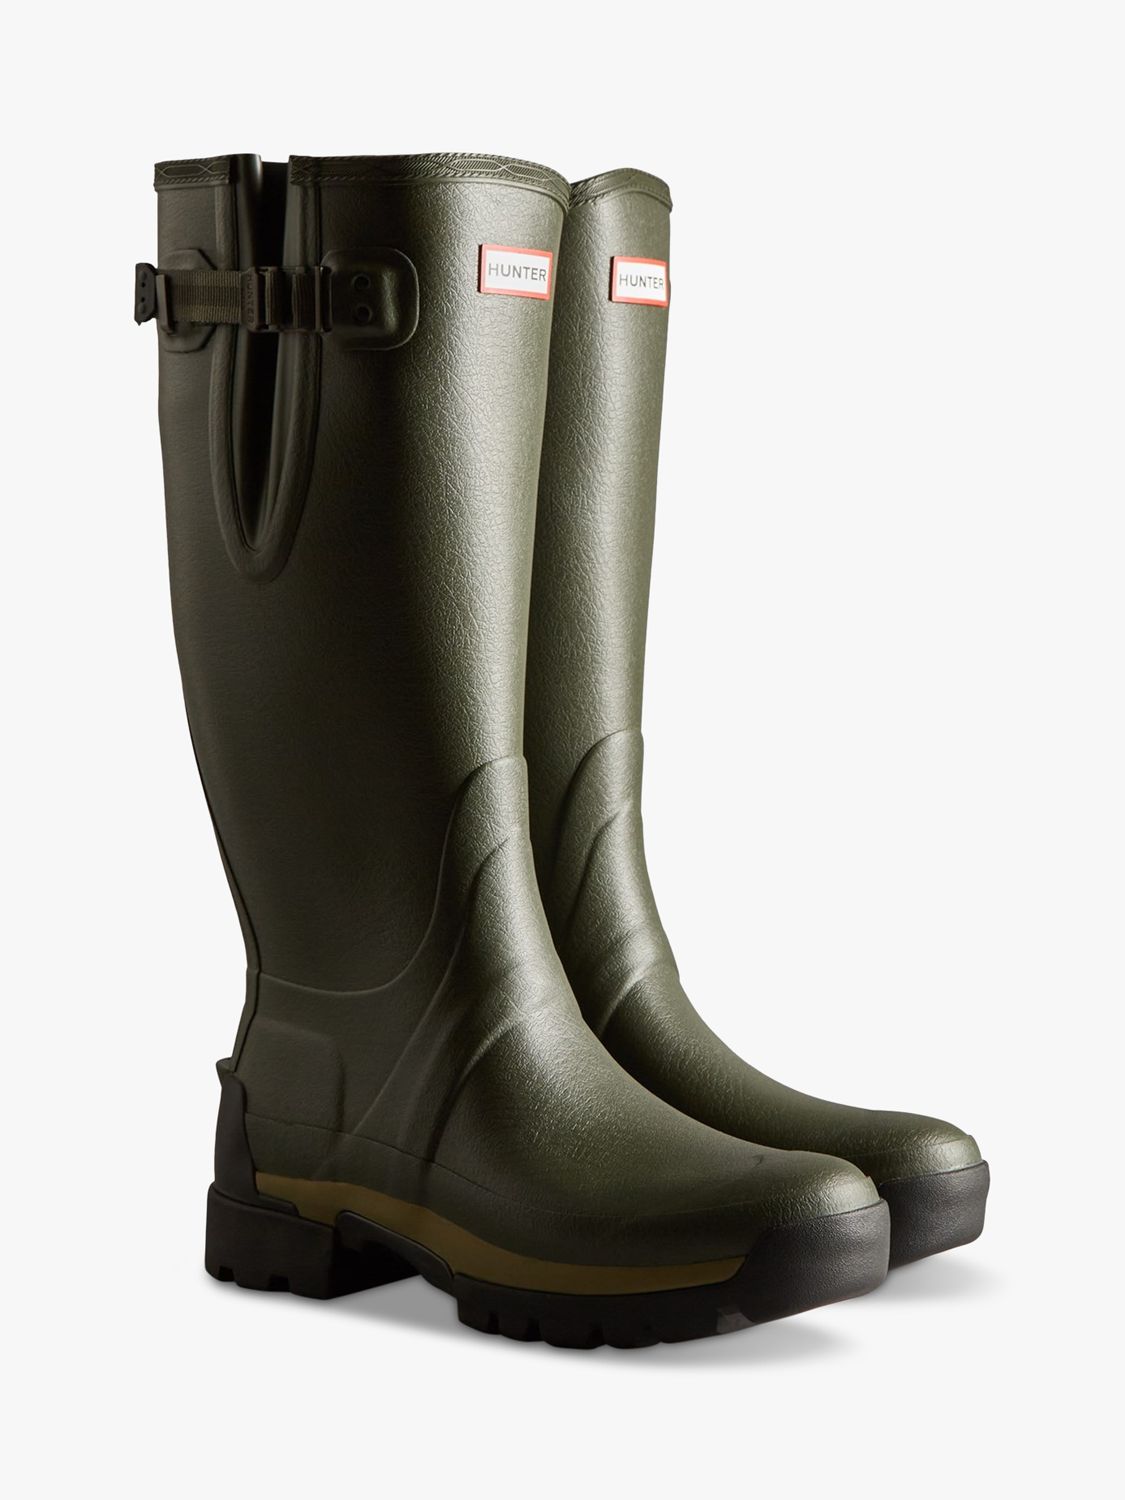 Hunter Men's Balmoral Side Adjustable Wellington Boots, Dark Olive, 7